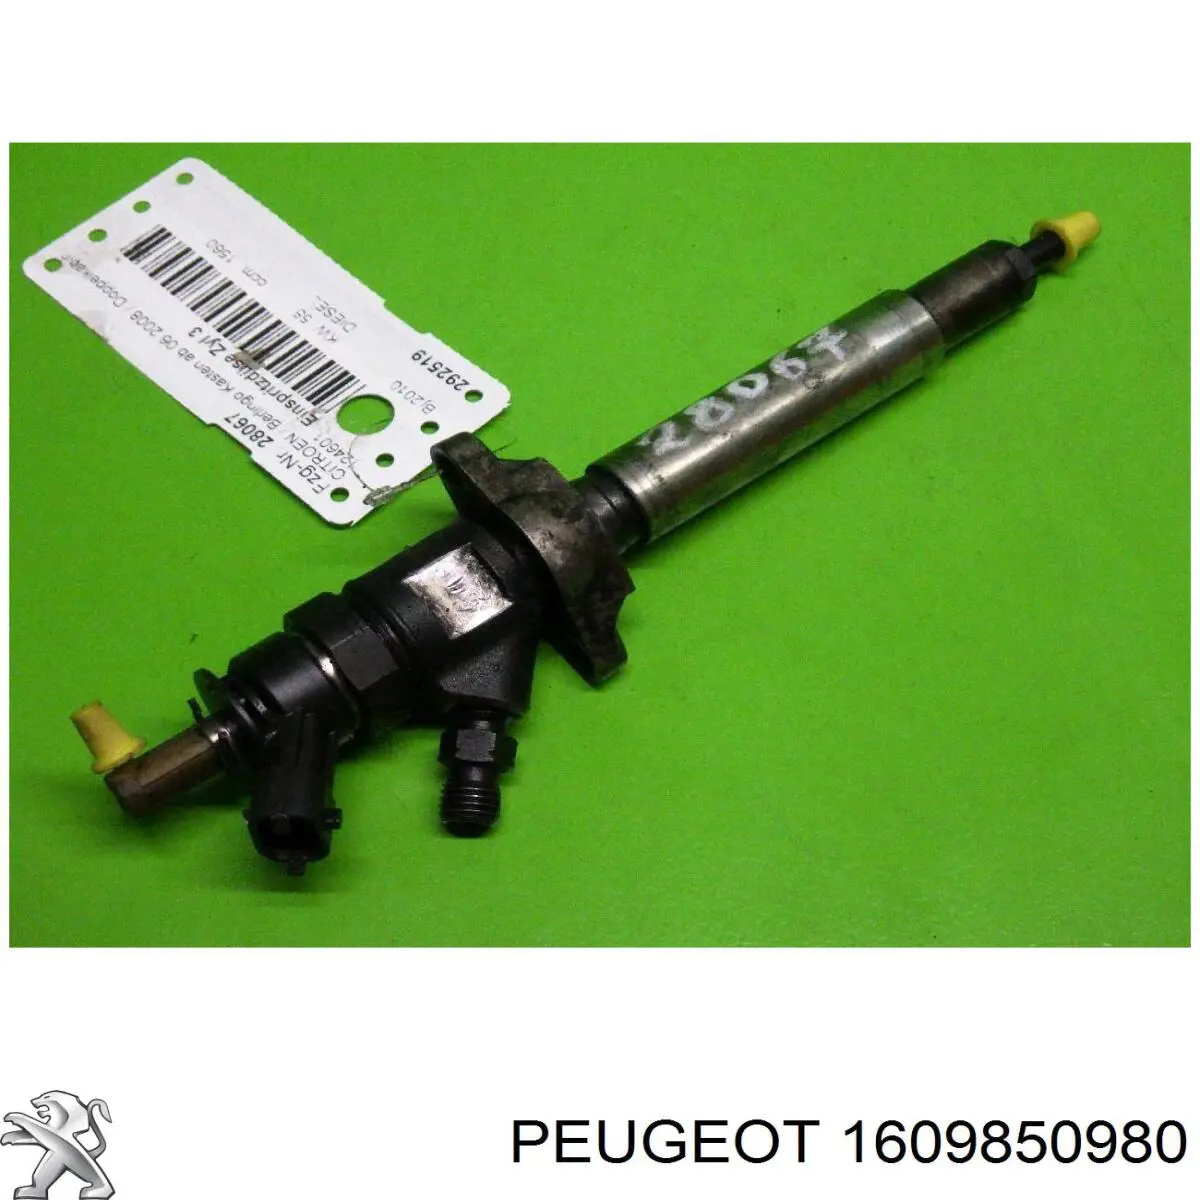 1609850980 Peugeot/Citroen injetor de injeção de combustível